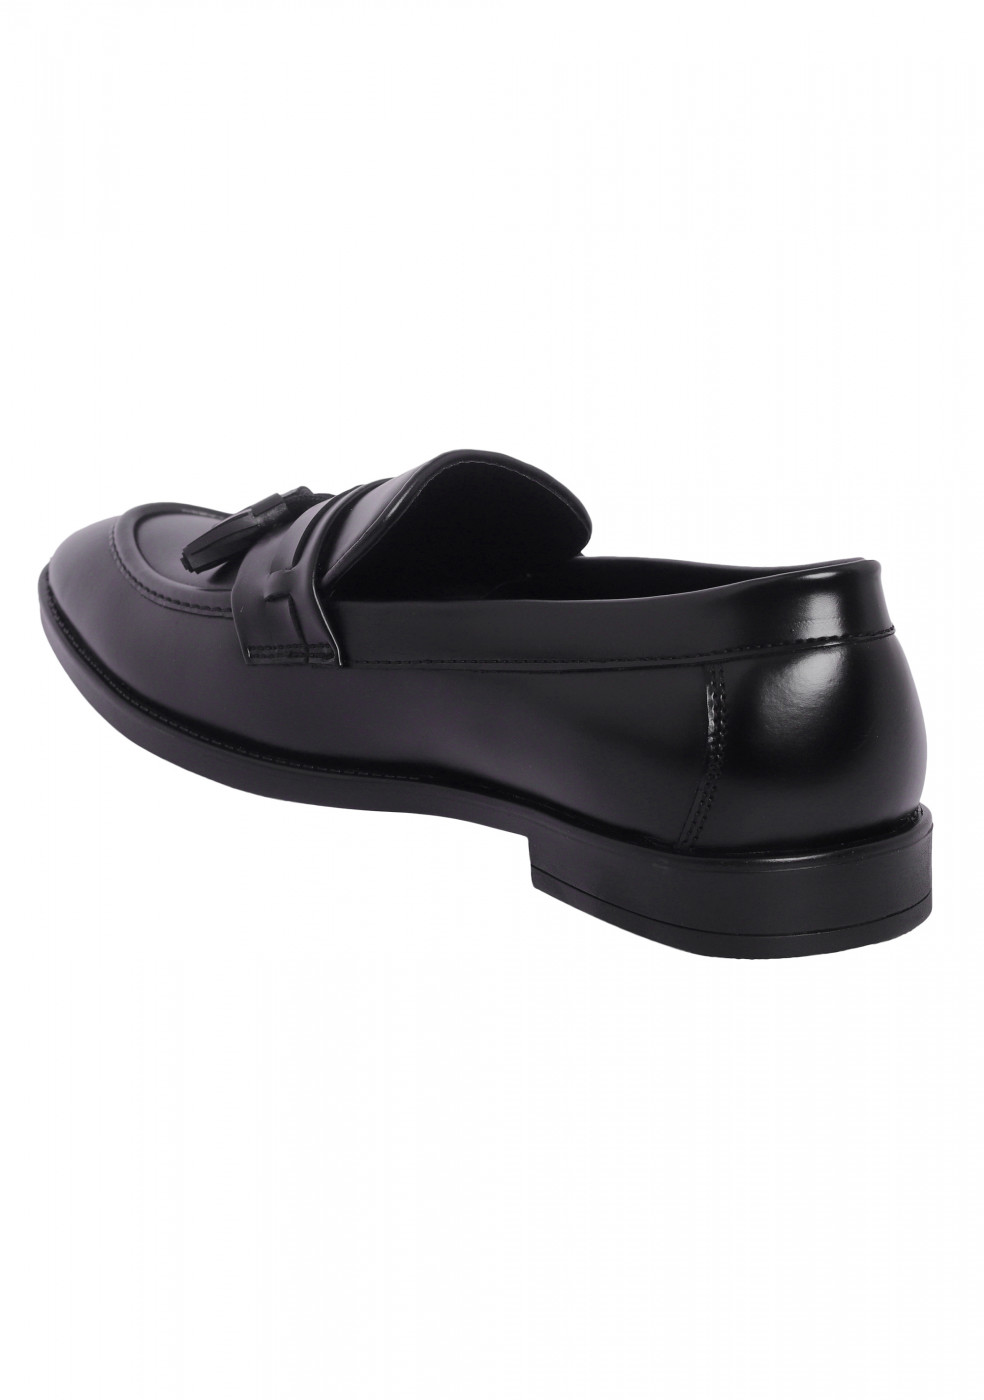 XSTOM Black Shoes For Men